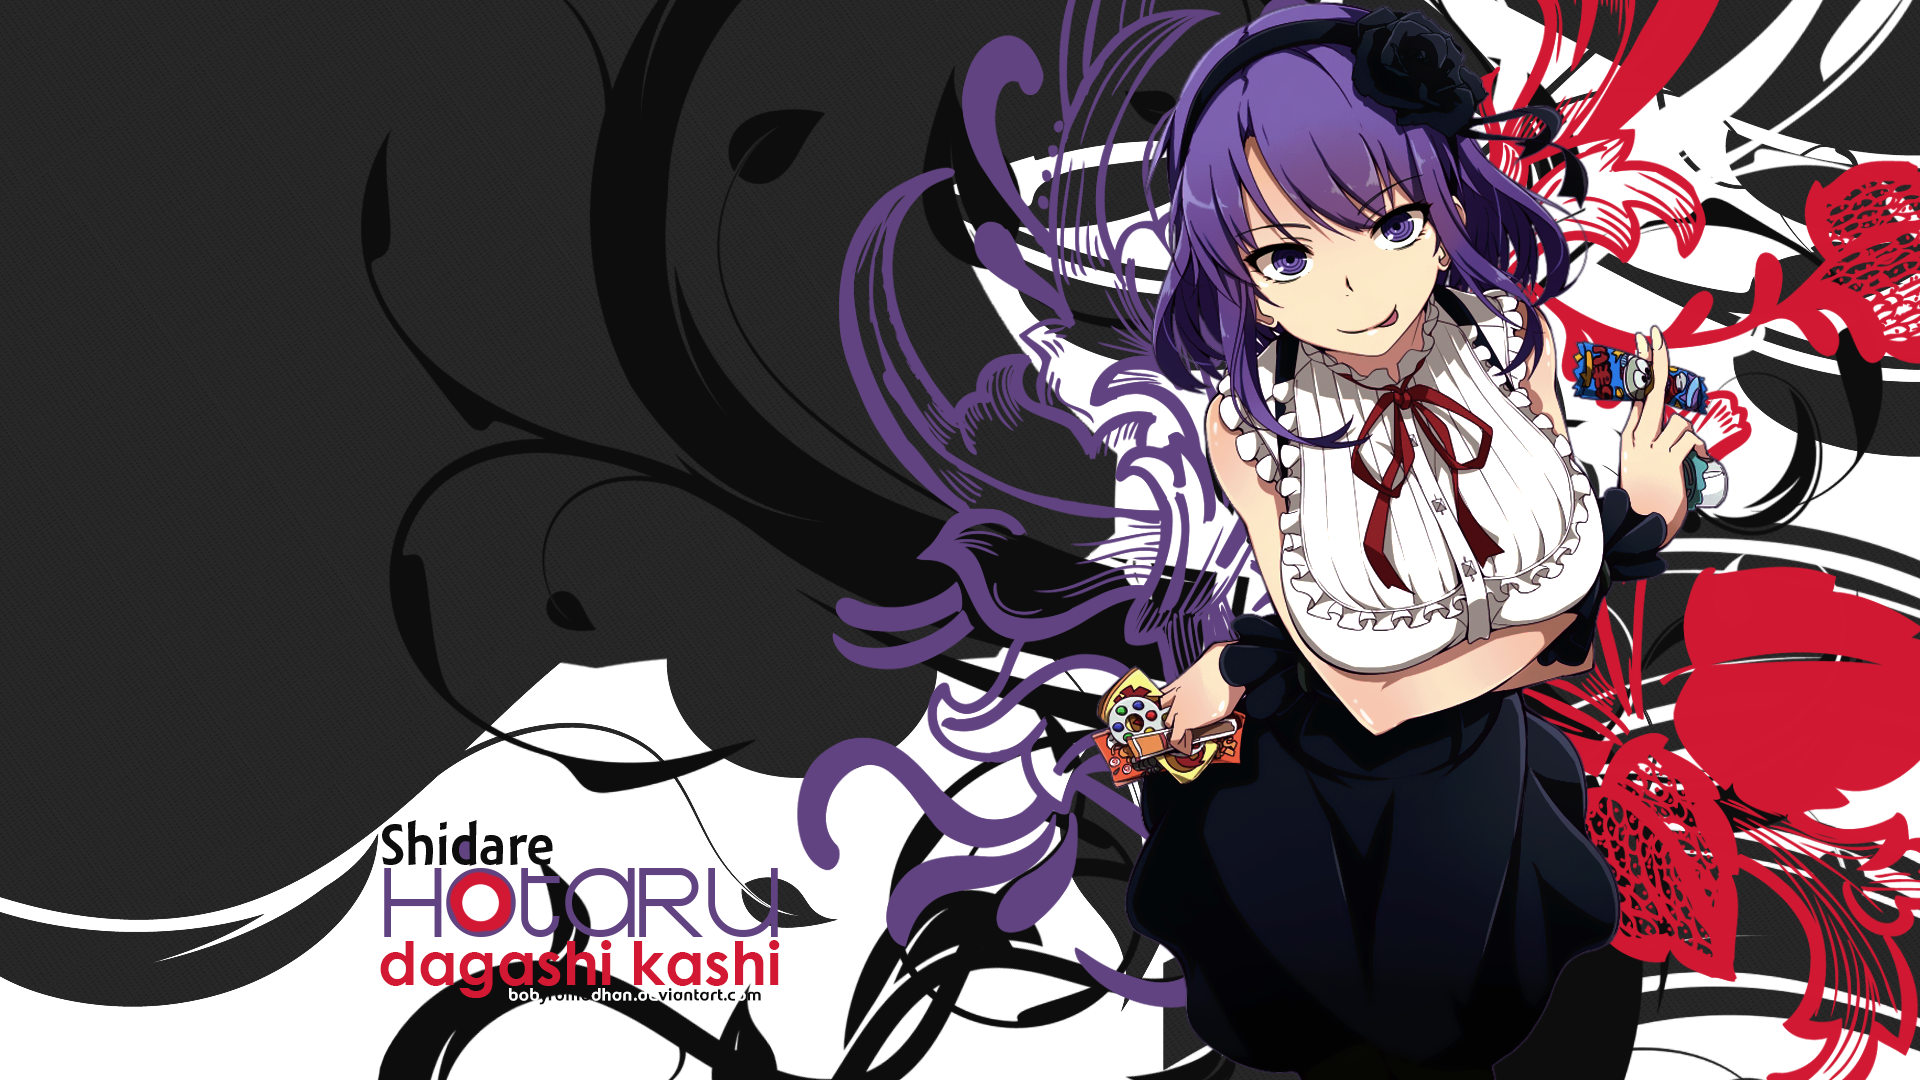 Anime 1920x1080 Shidare Hotaru Dagashi Kashi anime girls purple hair